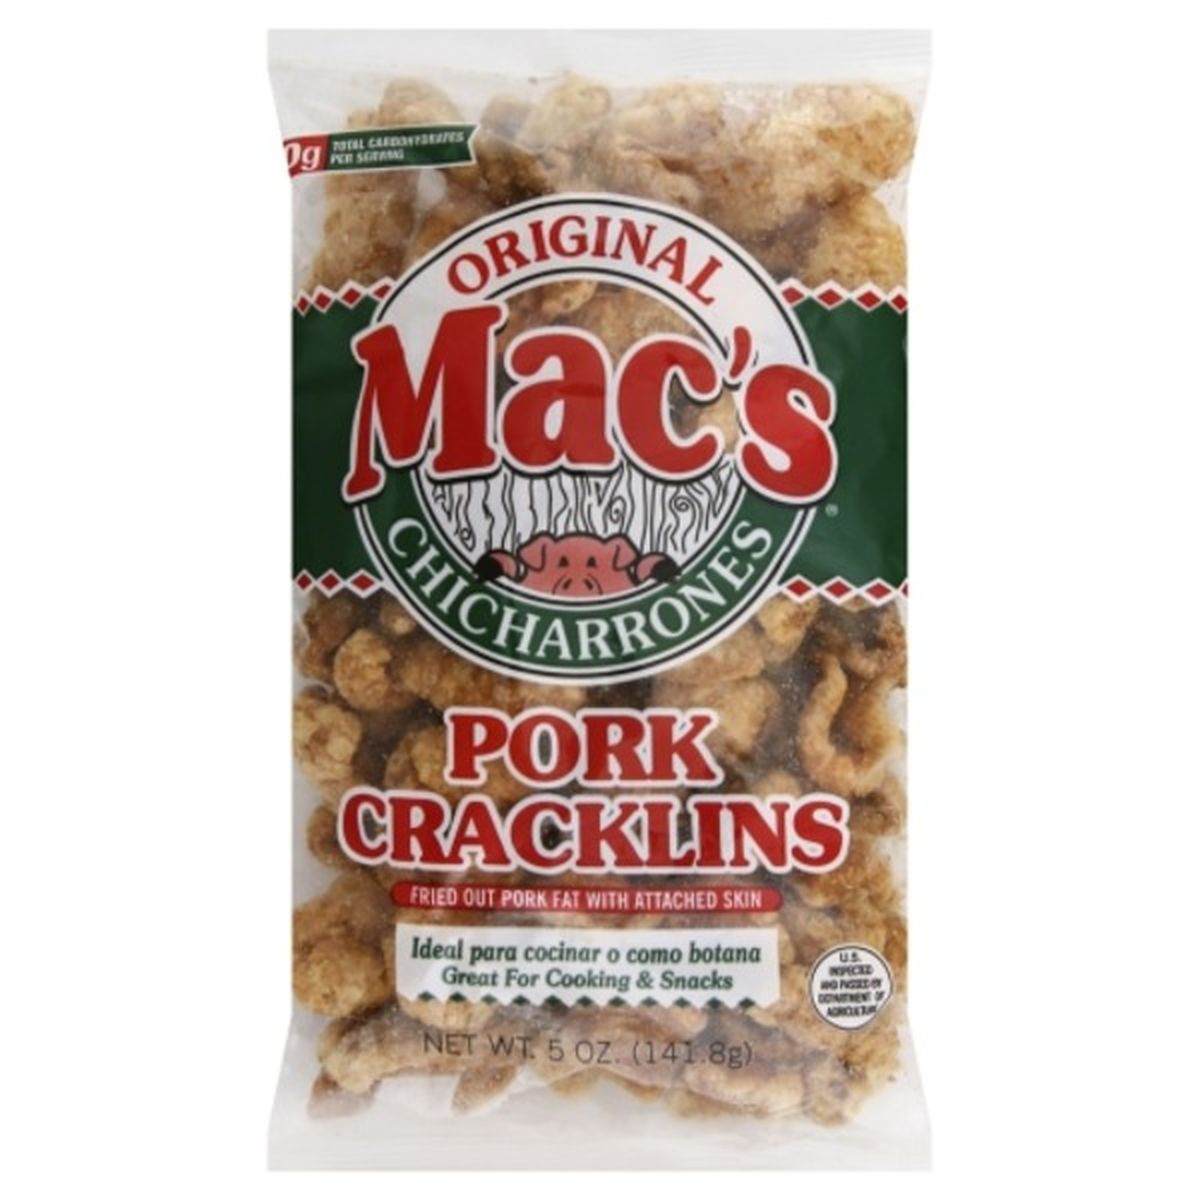 Calories in Macs Pork Cracklins, Original